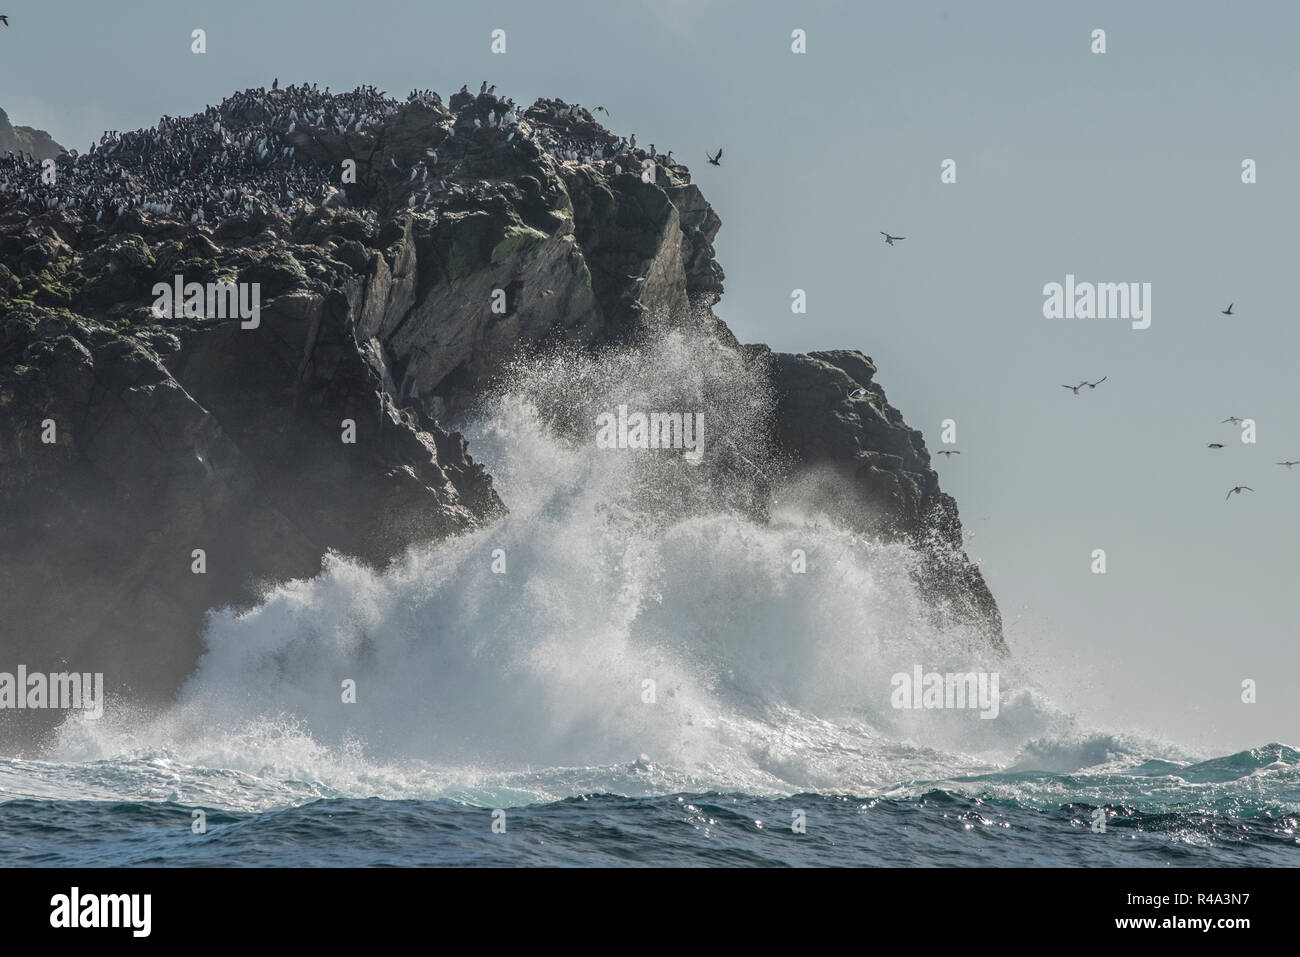 Les vagues s'écraser sur la rive de l'îles Farallon au large de la côte de Californie, les îles sont un lieu important de nidification pour les oiseaux pélagiques. Banque D'Images